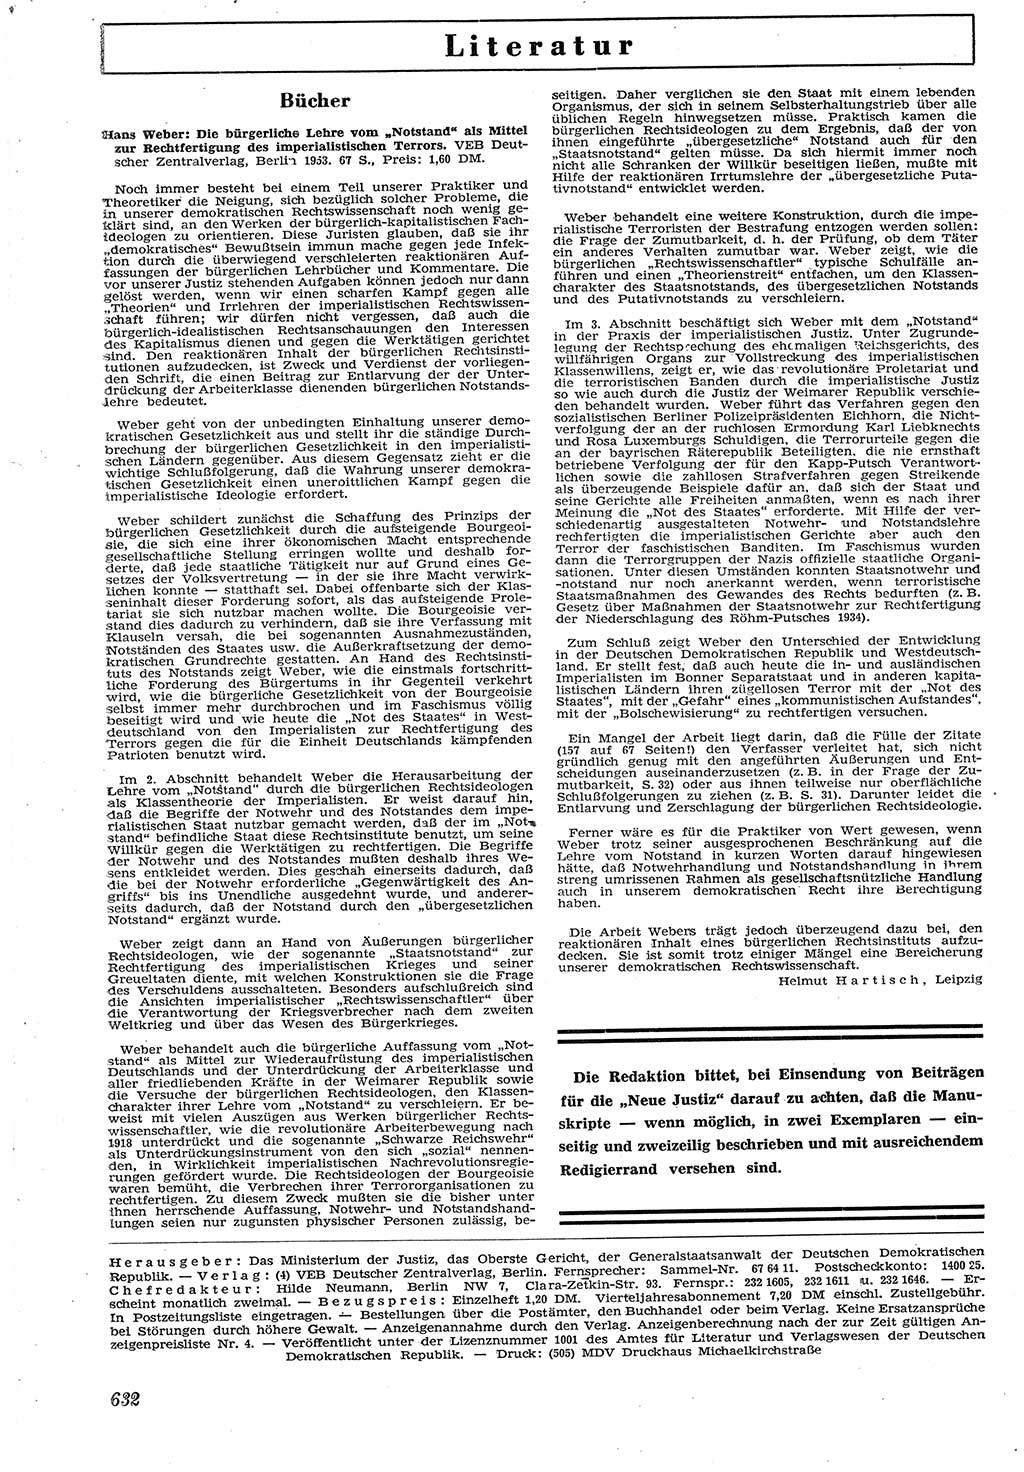 Neue Justiz (NJ), Zeitschrift für Recht und Rechtswissenschaft [Deutsche Demokratische Republik (DDR)], 7. Jahrgang 1953, Seite 632 (NJ DDR 1953, S. 632)